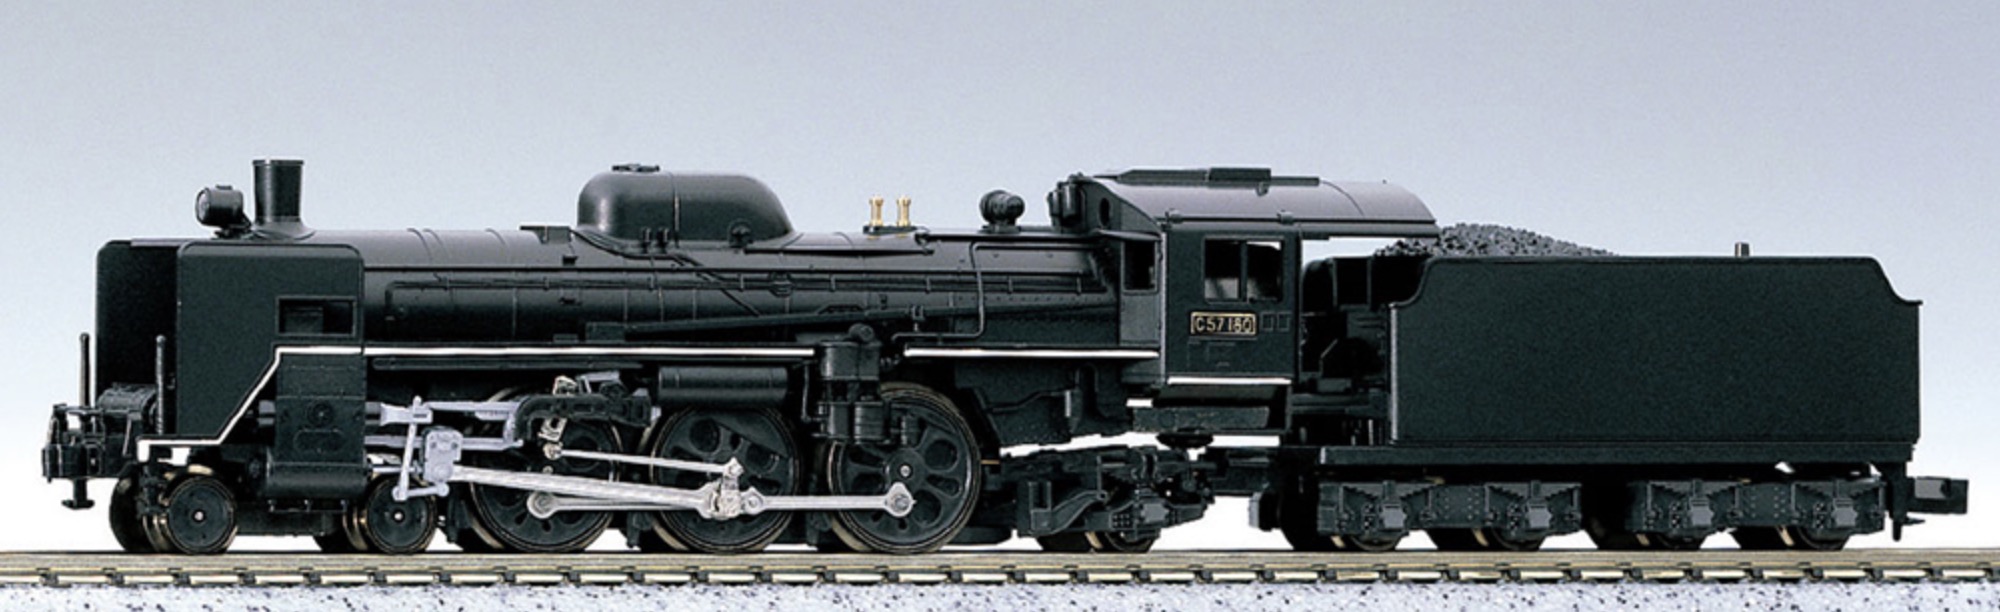 N Scale - Kato - 2013 - Locomotive, Steam, 4-6-2, C57 - Japan Railways East - C57 180